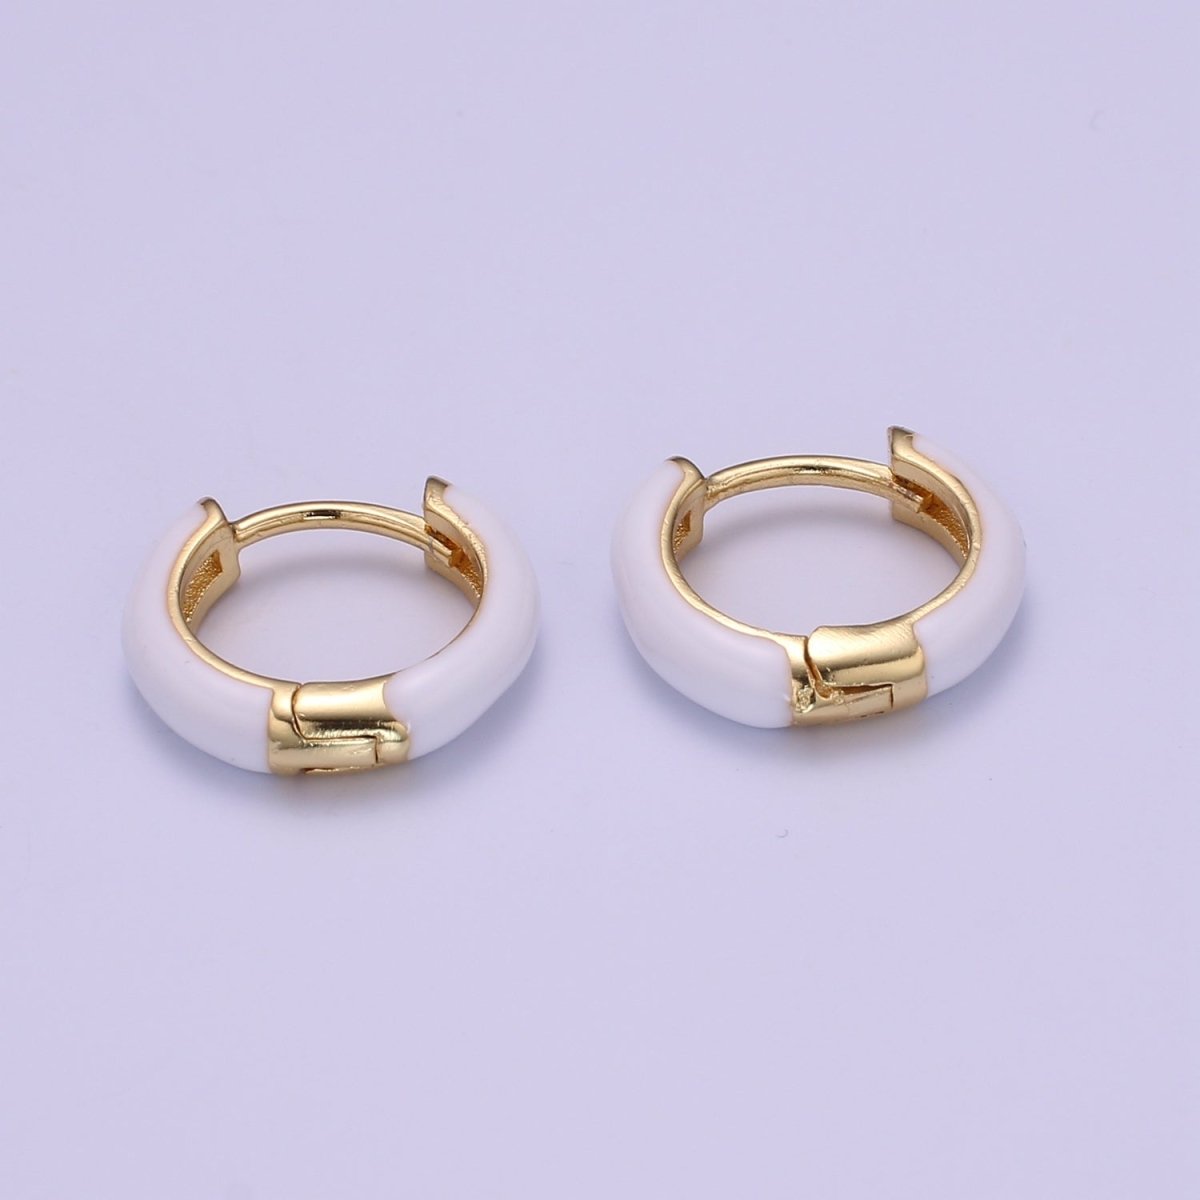 Enamel Hoop Earrings • Colorful gold cartilage hoop • Dainty huggie hoop earrings Neon Blue Pink Green Orange Teal White Earring 15mm P-063~P-071 - DLUXCA